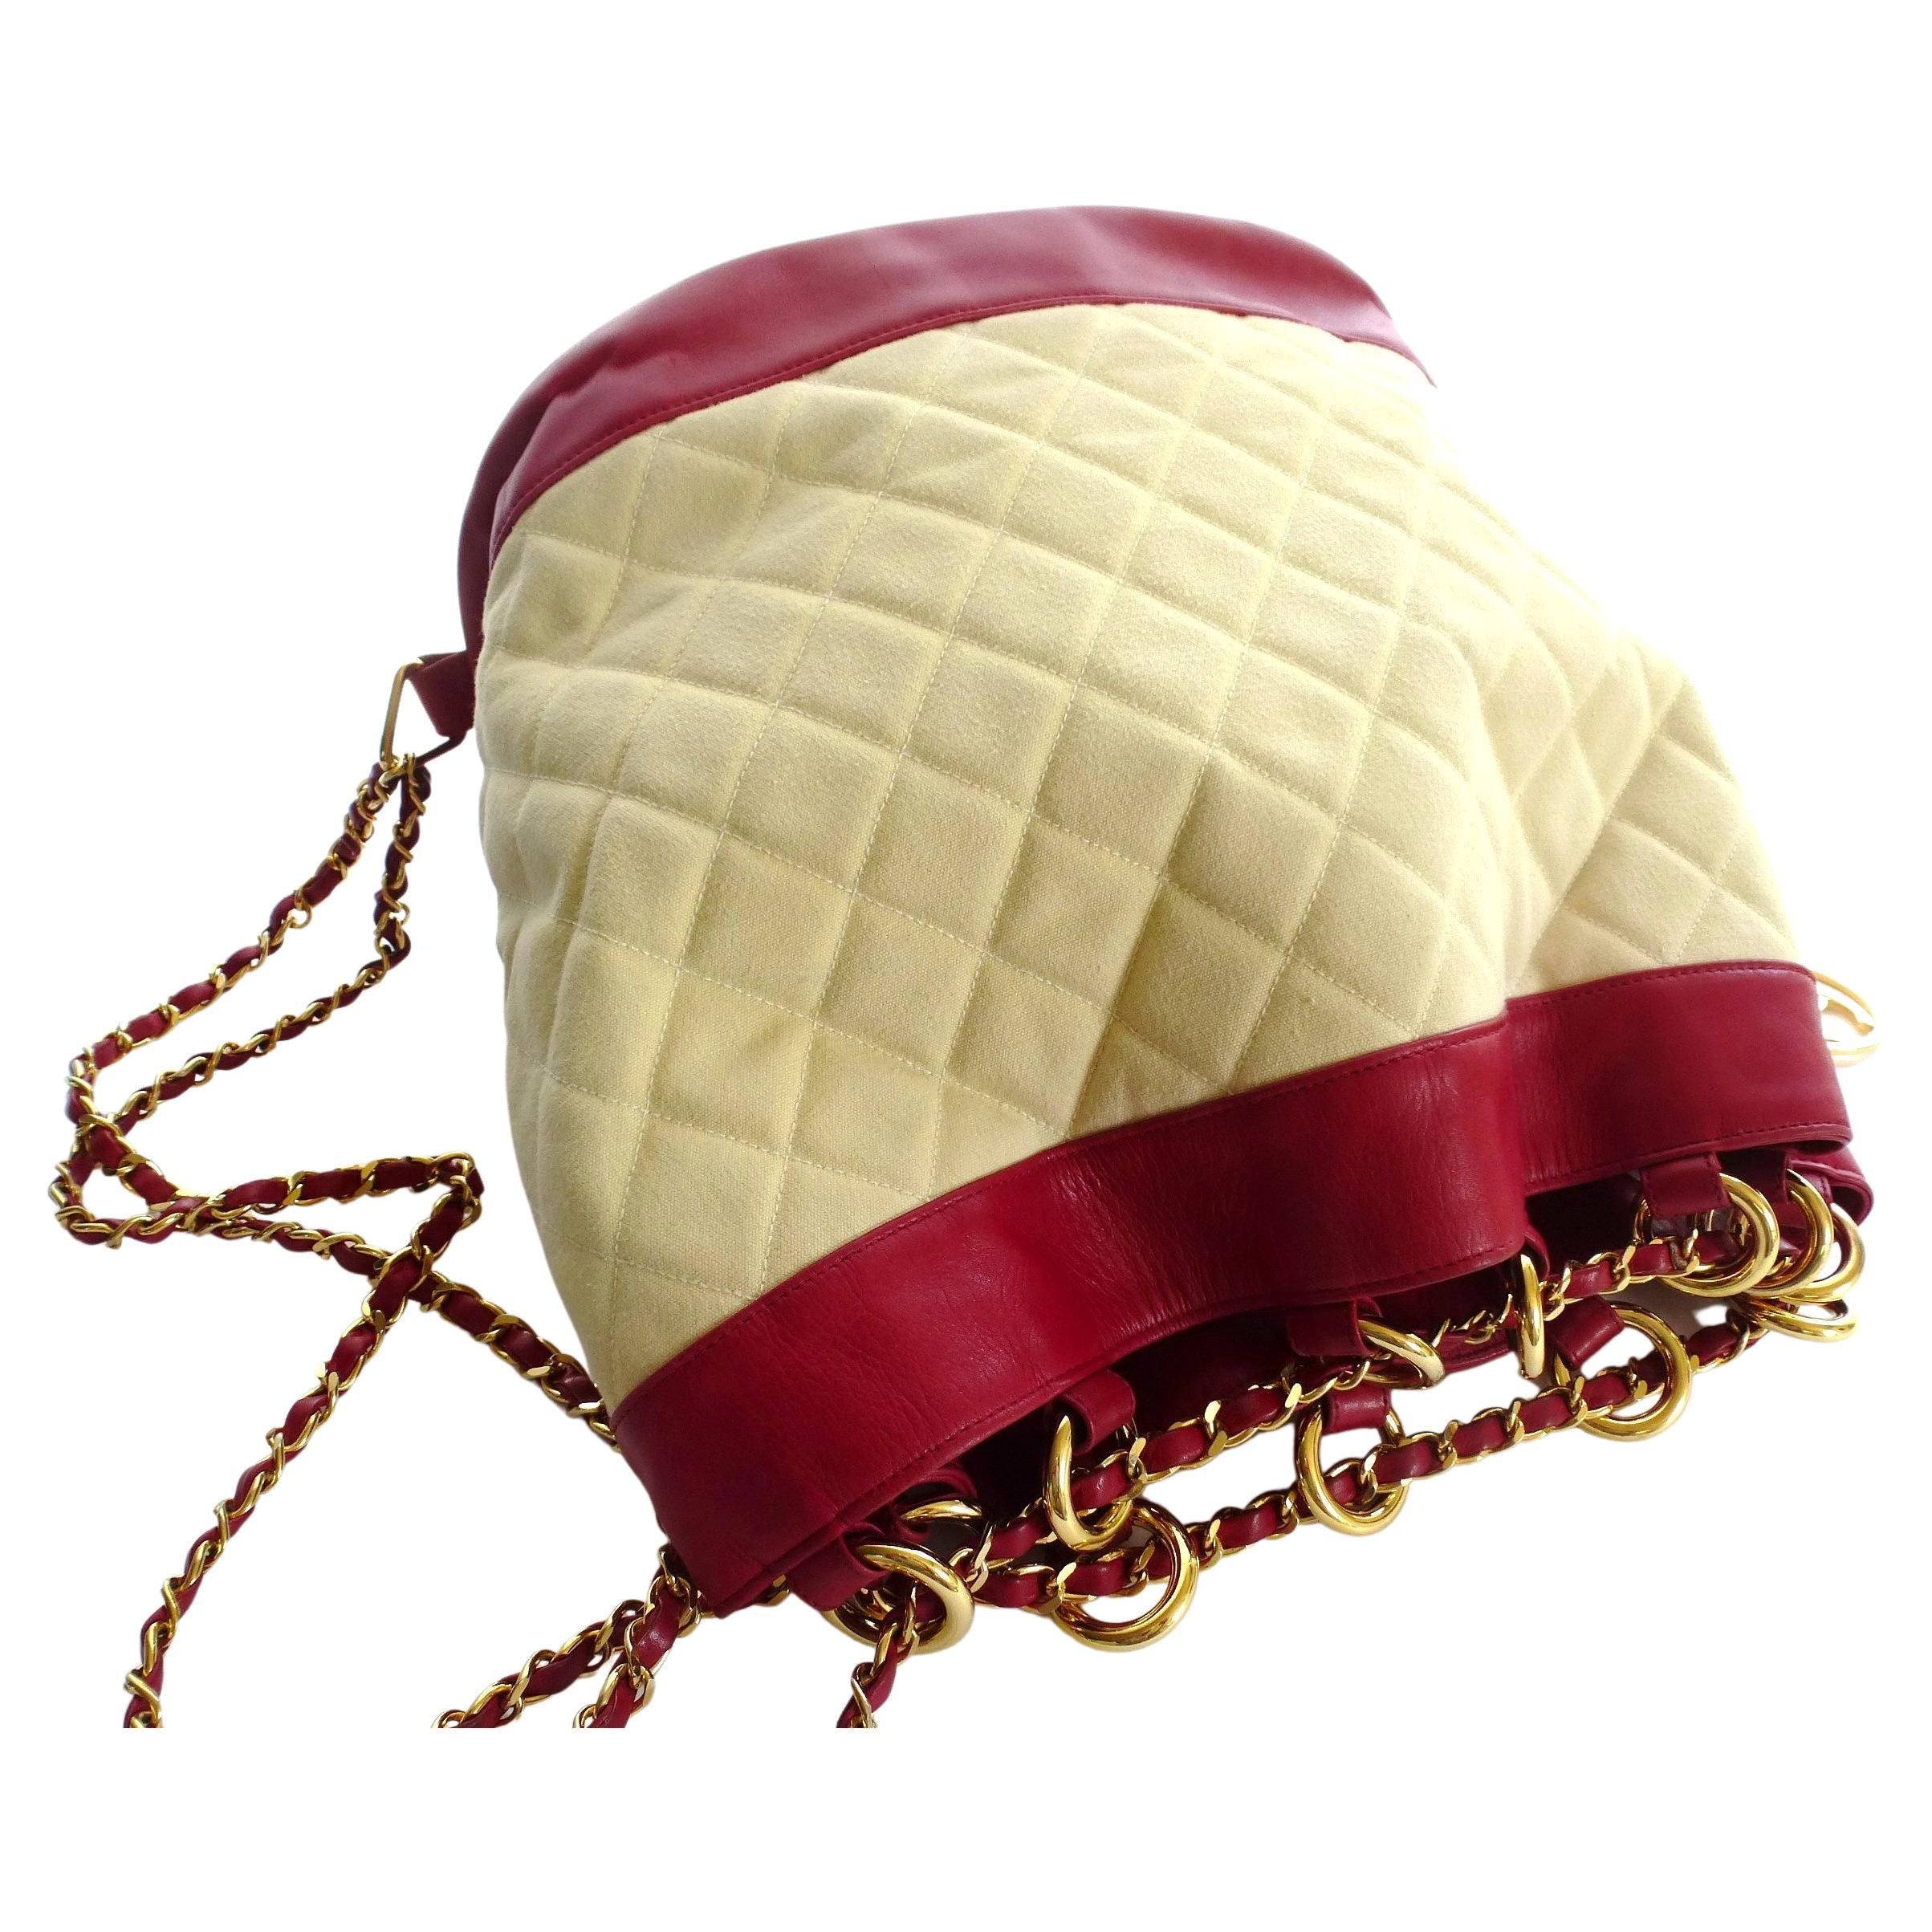 Ikonische Vintage-Umhängetasche von Chanel aus rotem Lammleder und naturfarbenem, gestepptem Canvas. Die lange Tragekette wird durch 12 große vergoldete Ringe an der Oberseite geführt und verschließt so die Tasche. 
Das Innere der Tasche ist